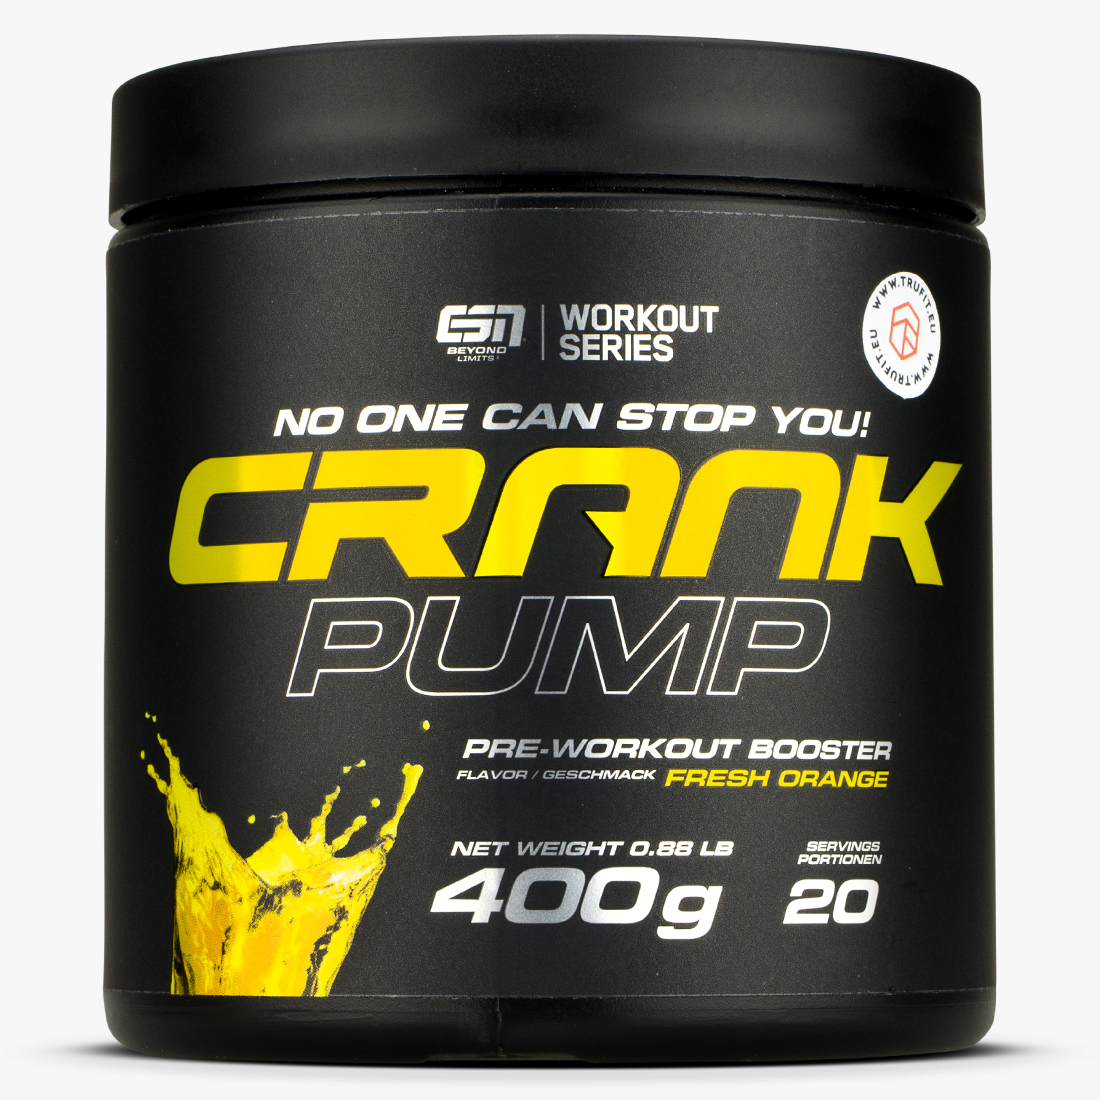 Crank Pump Pro